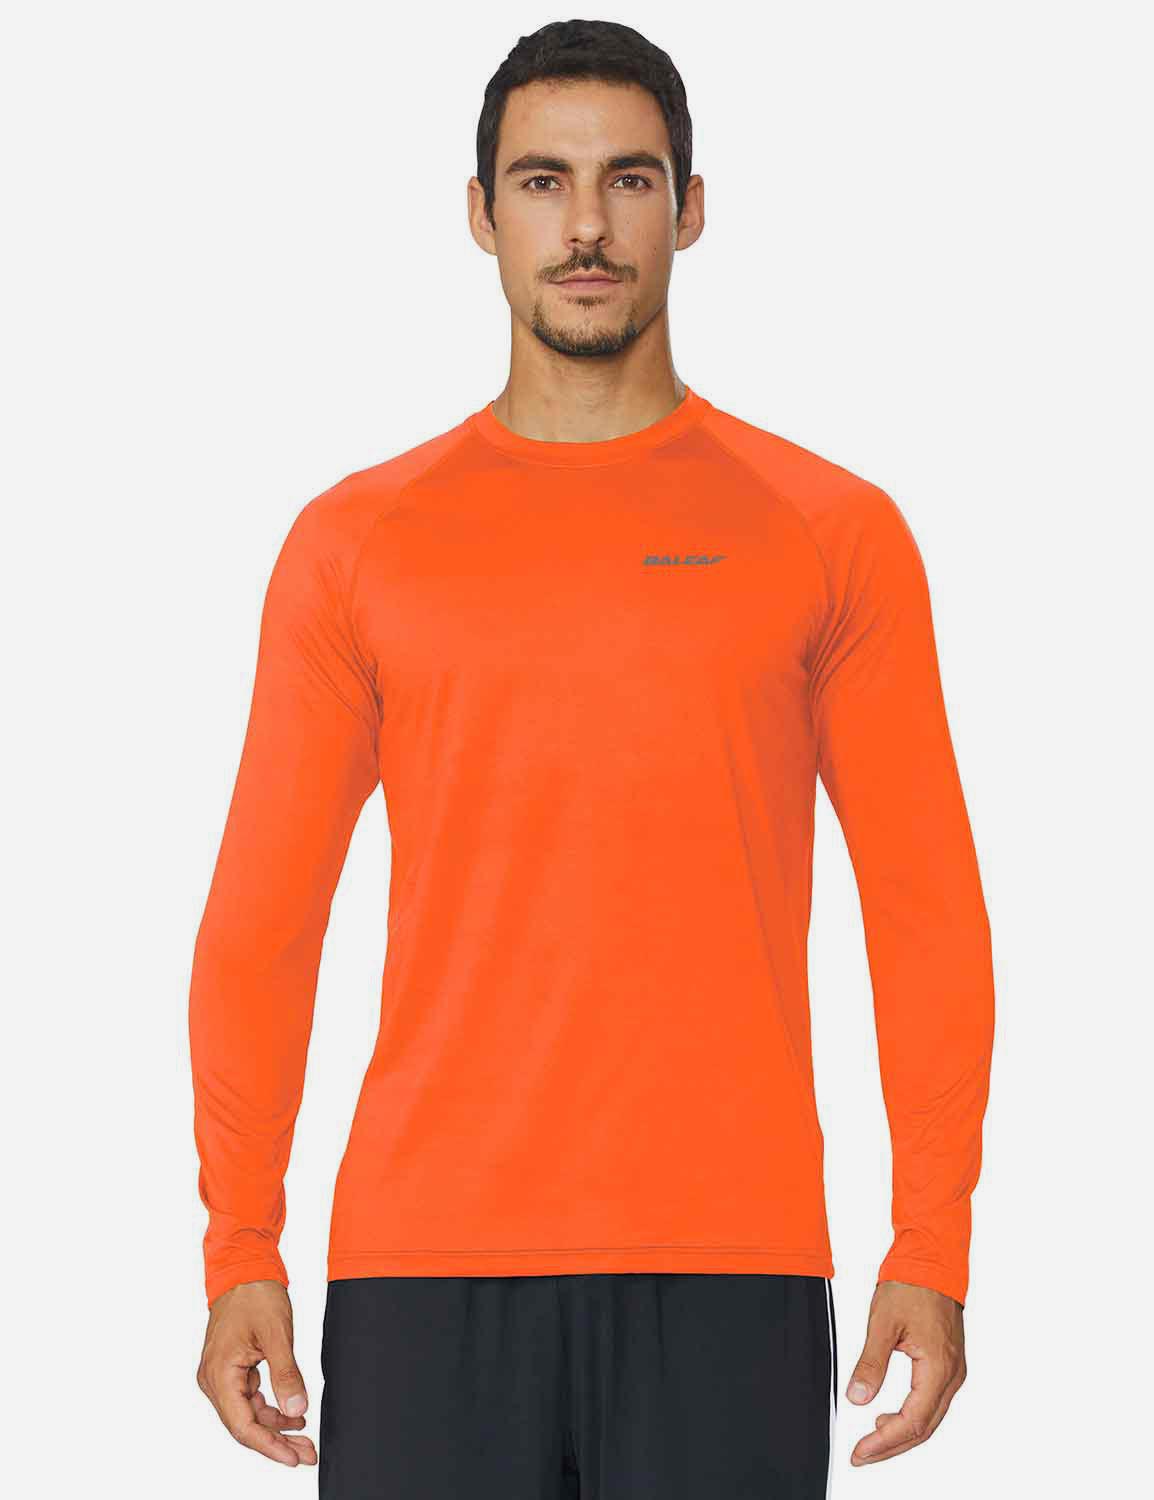 Baleaf Men's Workout Crew-Neck Slim-Cut Long Sleeved Shirt abd195 Orange Front